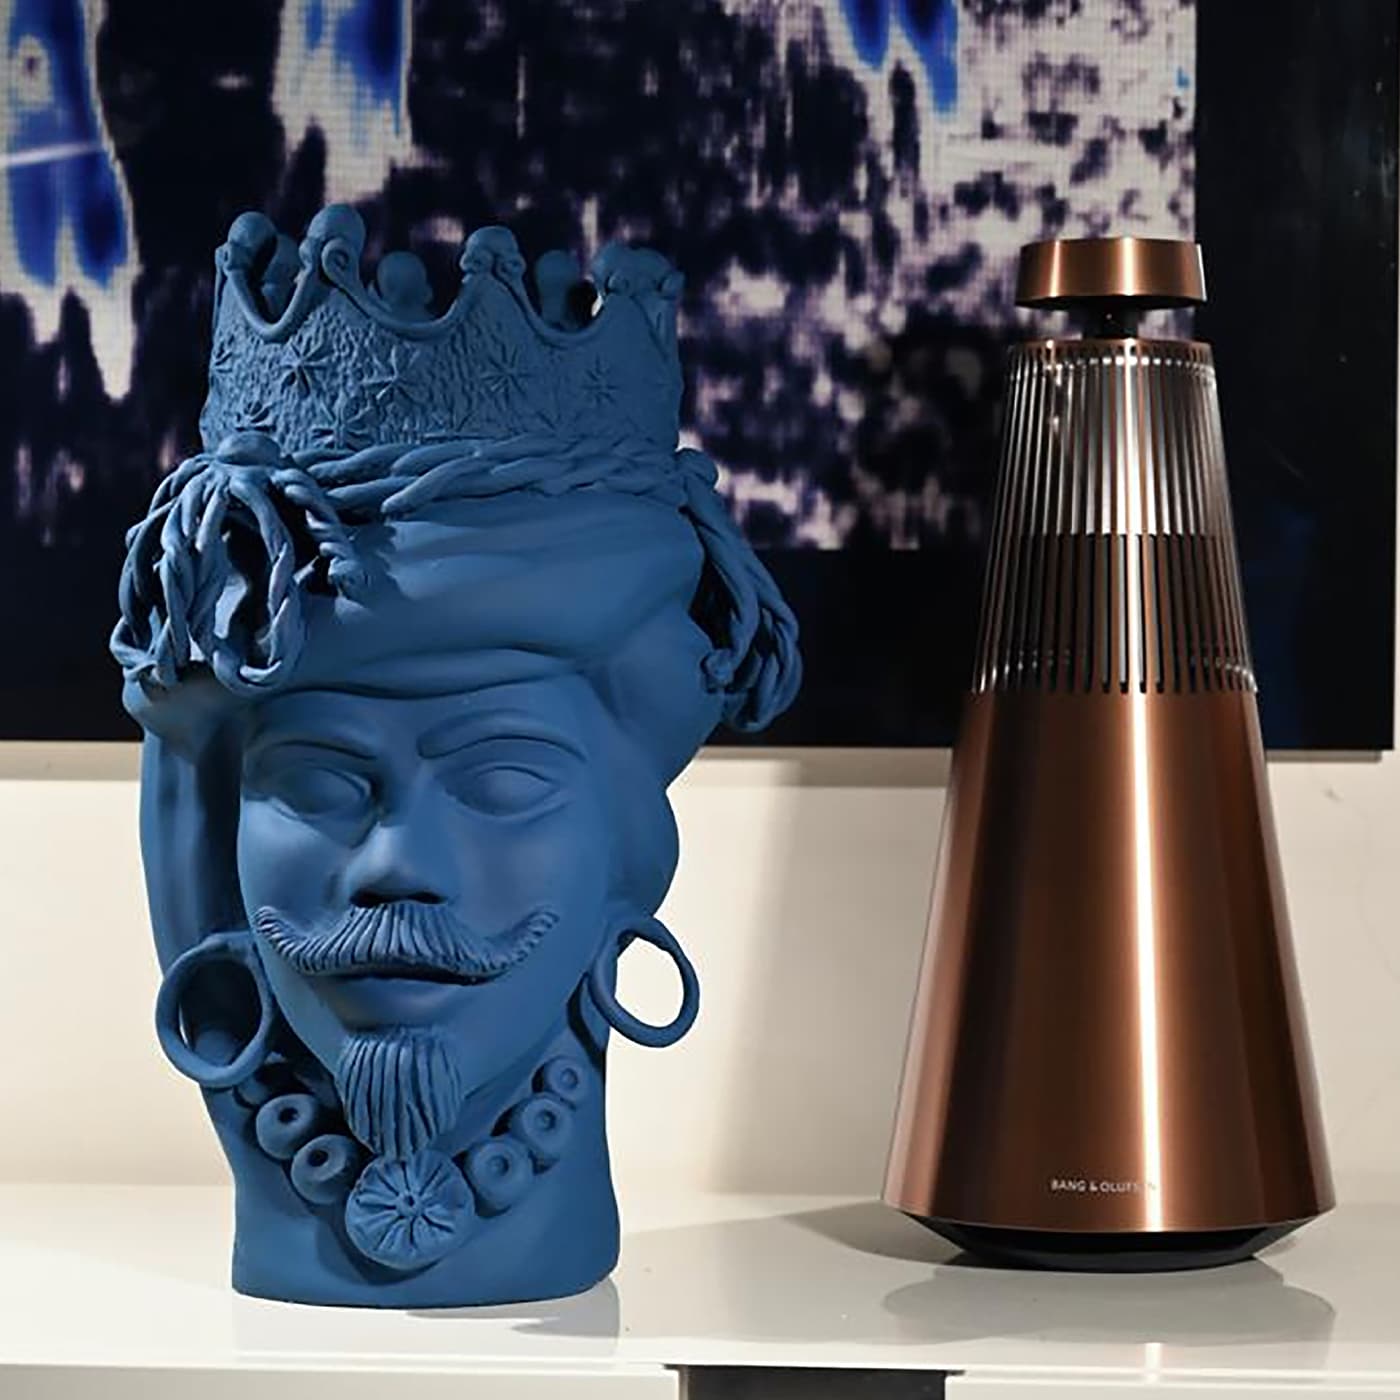 Moor's Head Blue Sculpture